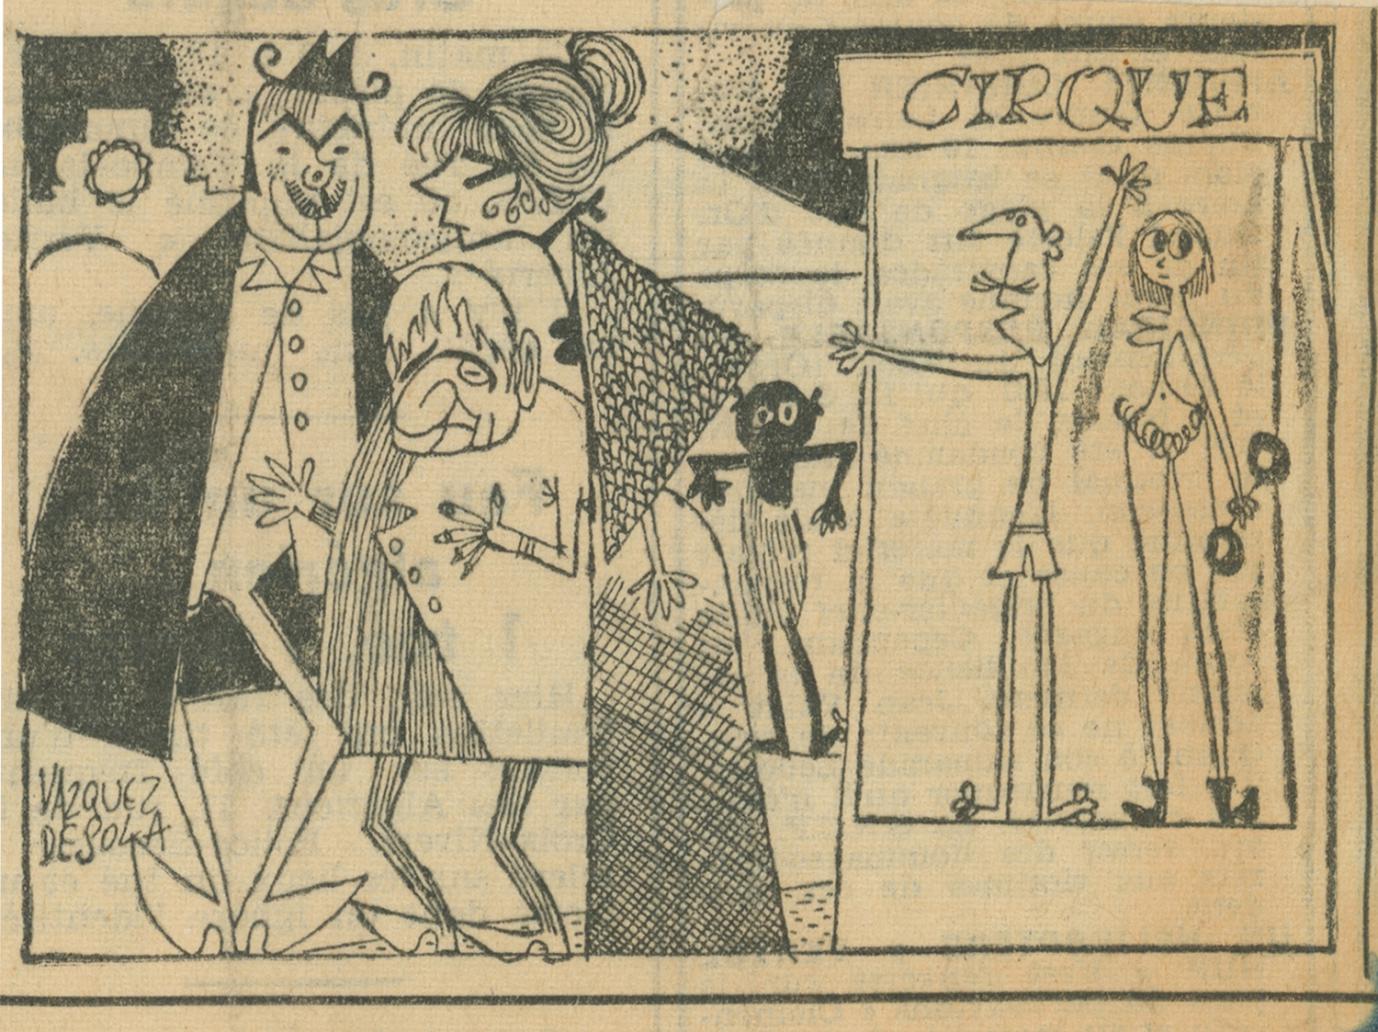 Una vignetta dedicata allo spettacolo su “Libération” del 15 giugno 1962 - Archivio Piccolo Teatro di Milano